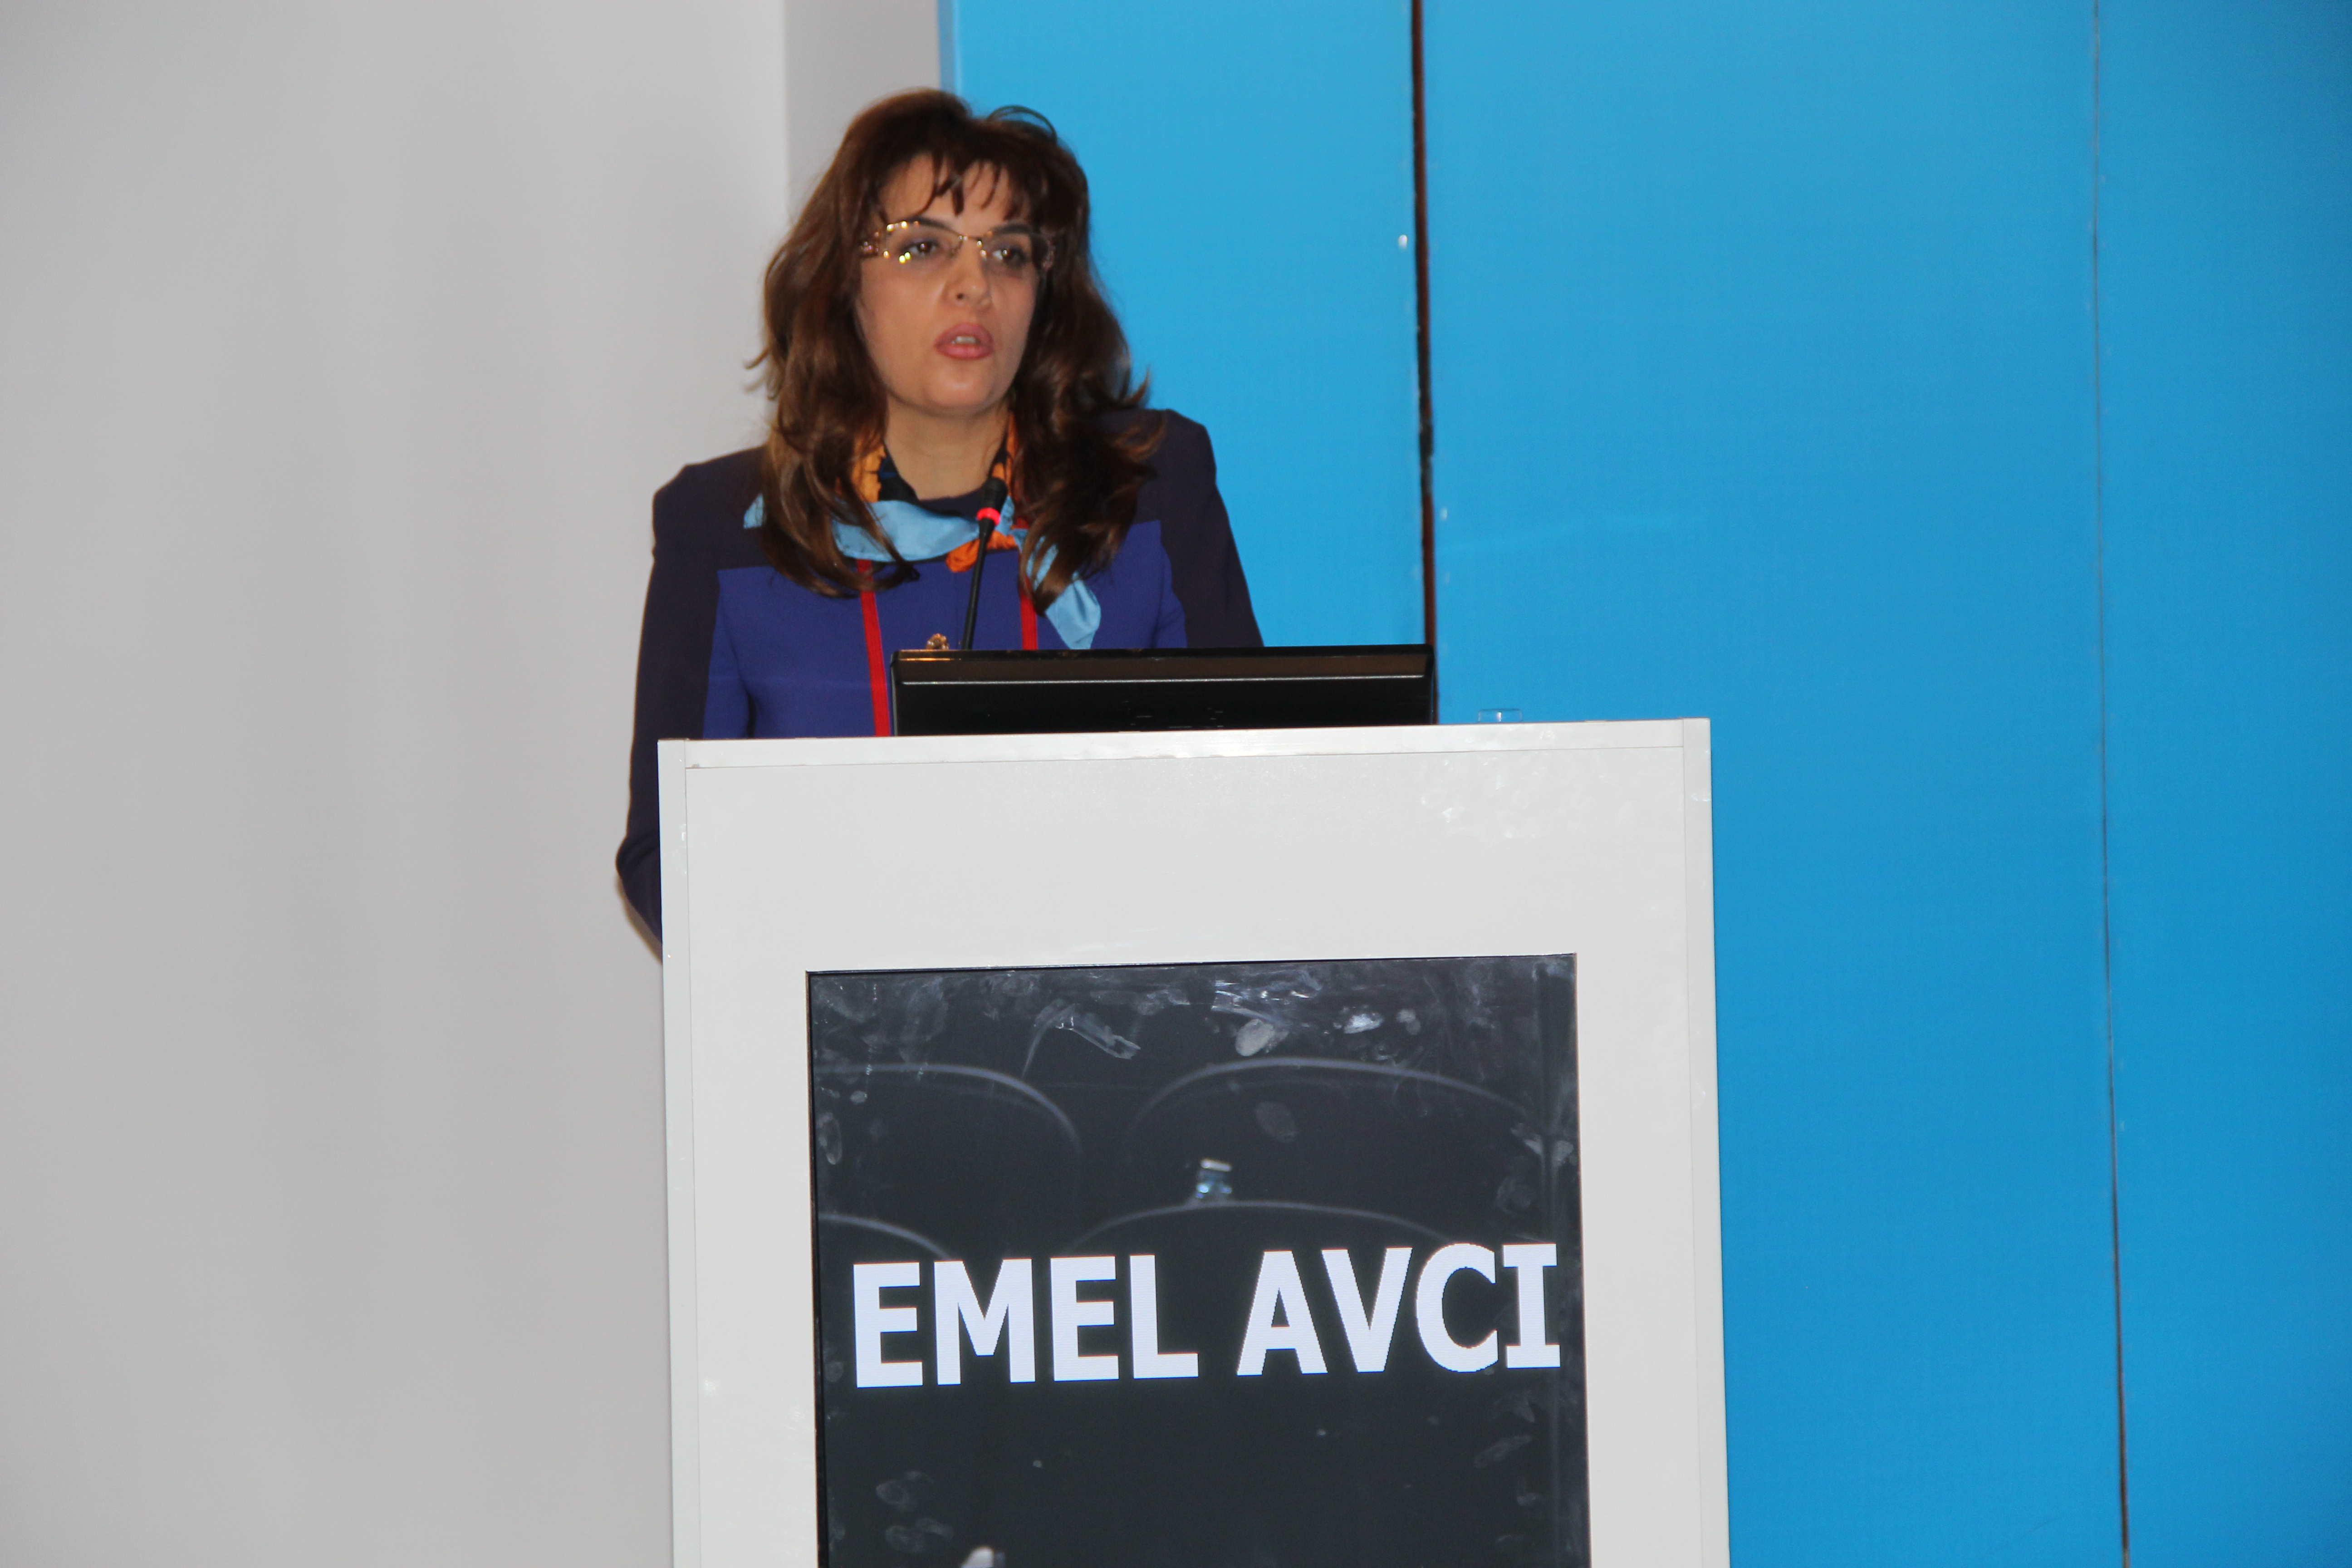 Dr. Emel AVCI